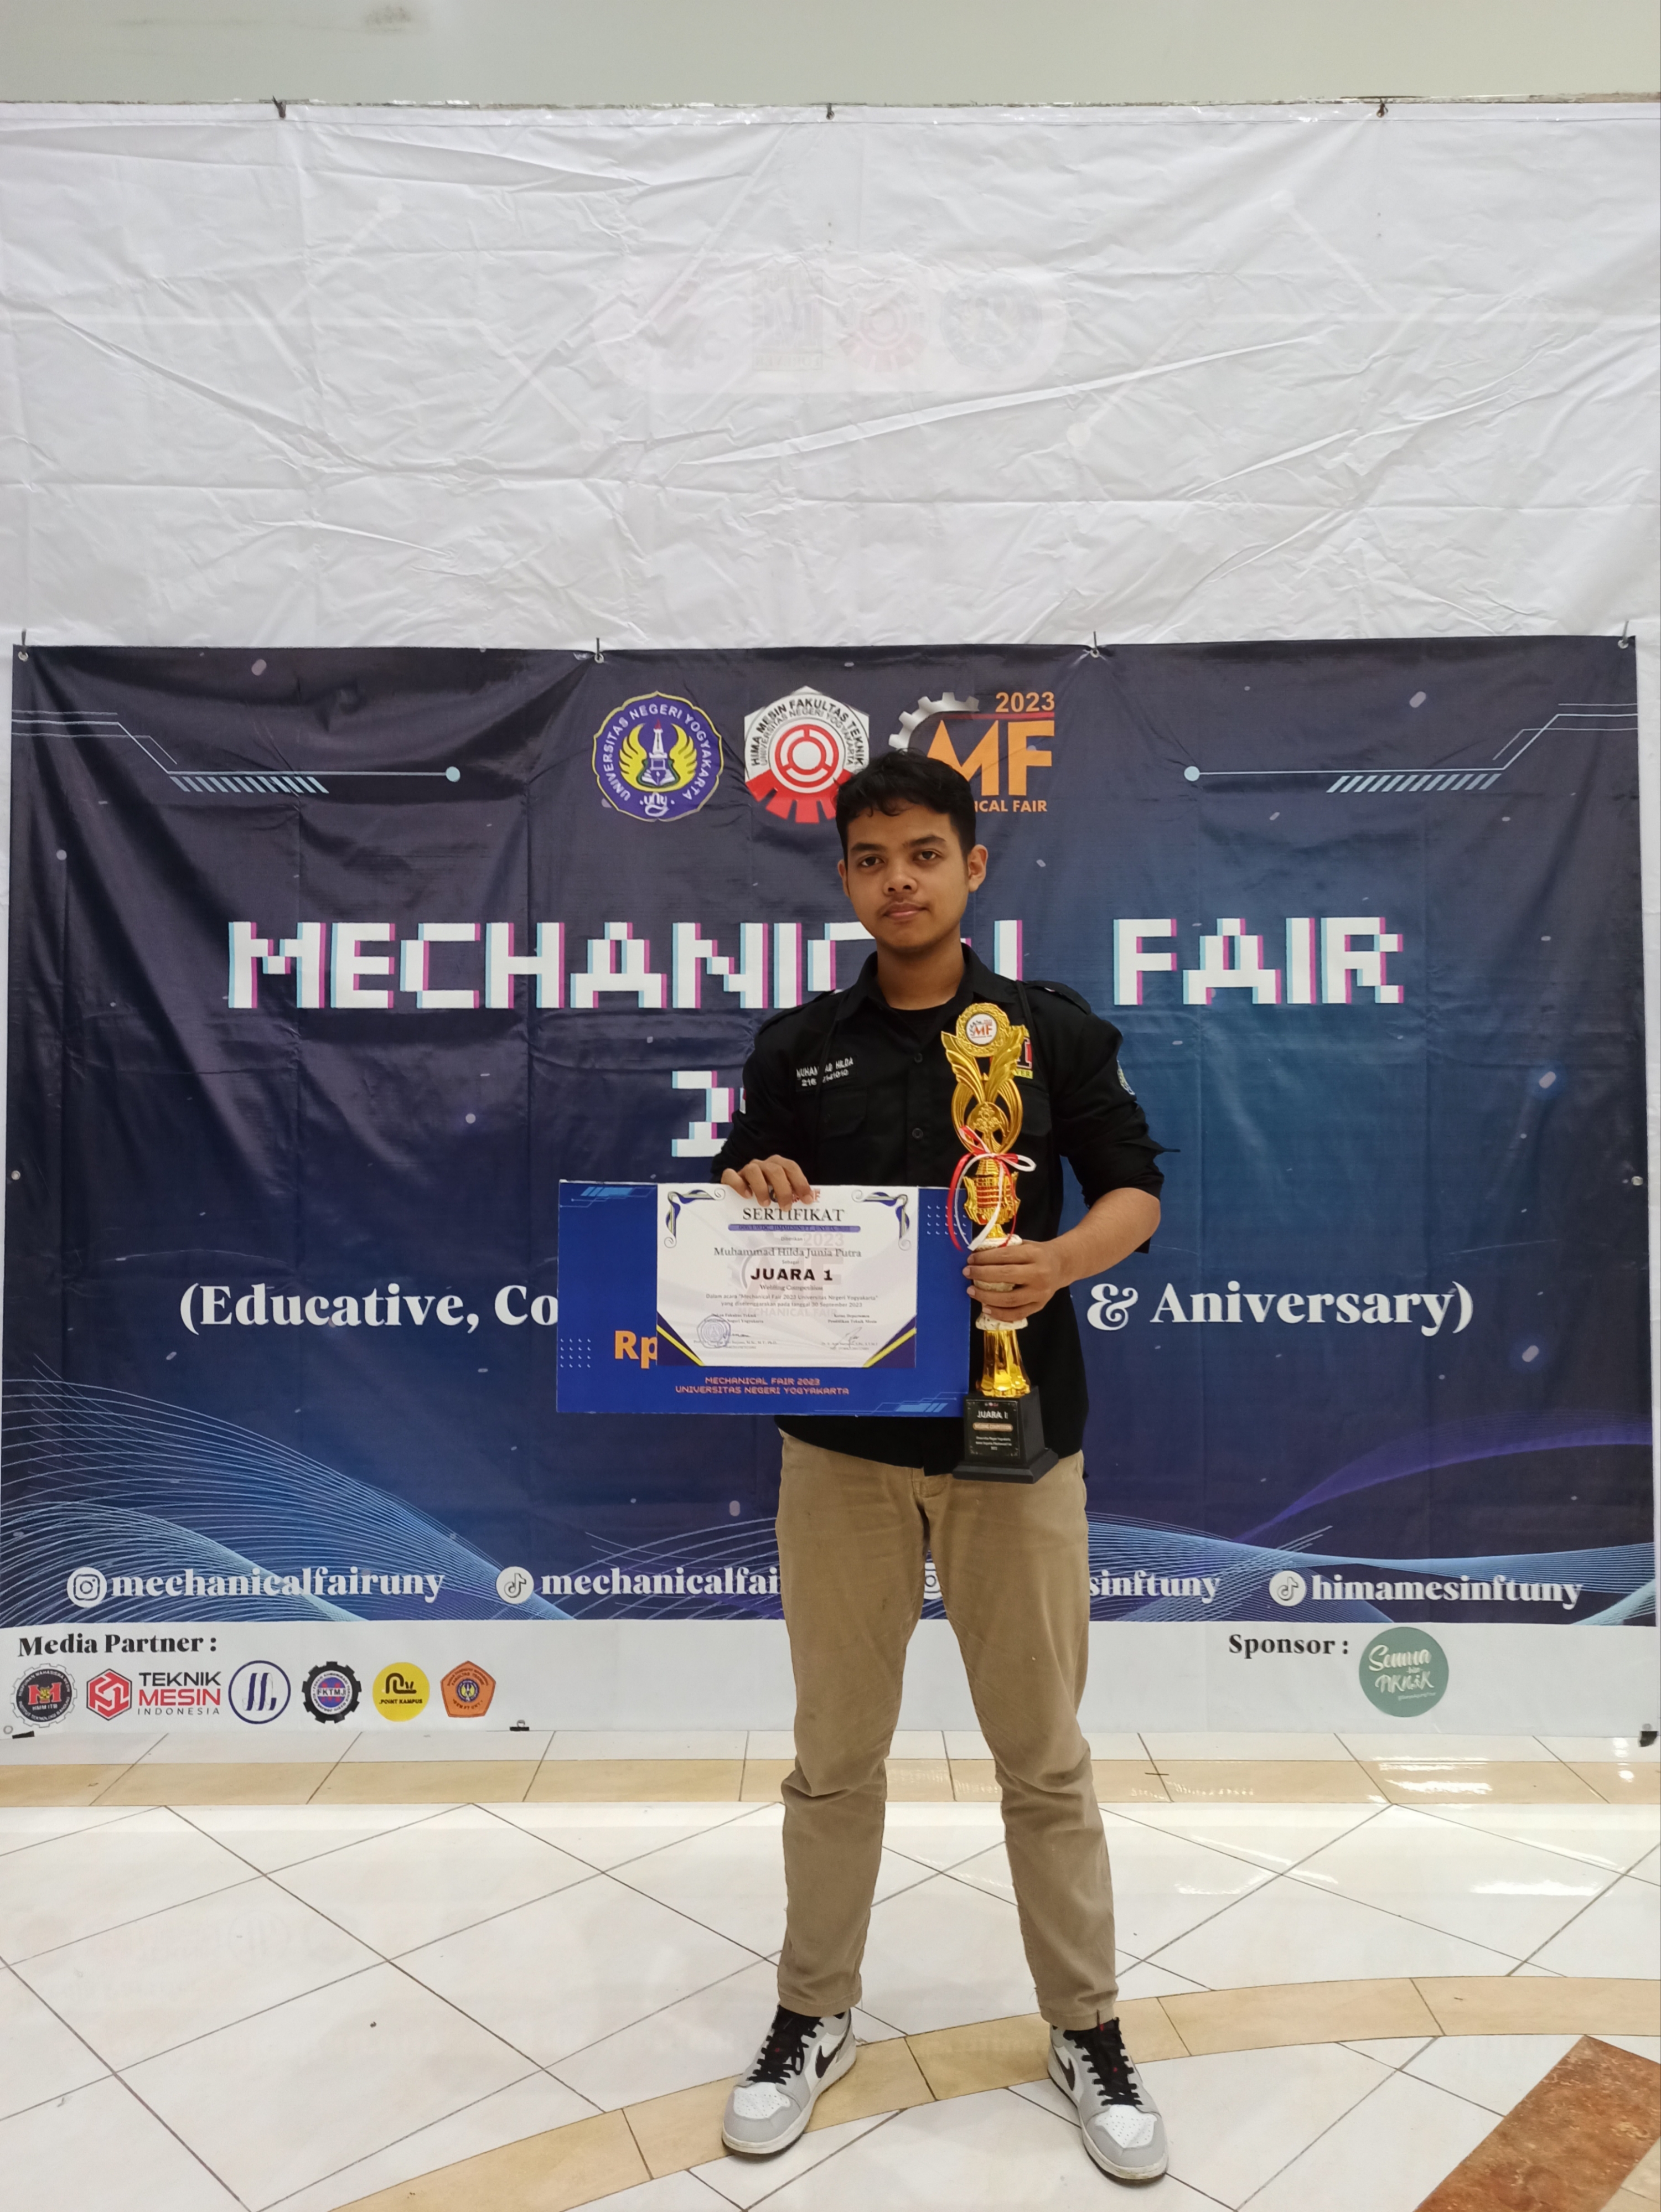 Foto Kompetisi Pengelasan 3G Mechanical Fair Universitas Negeri Yogyakarta 2023